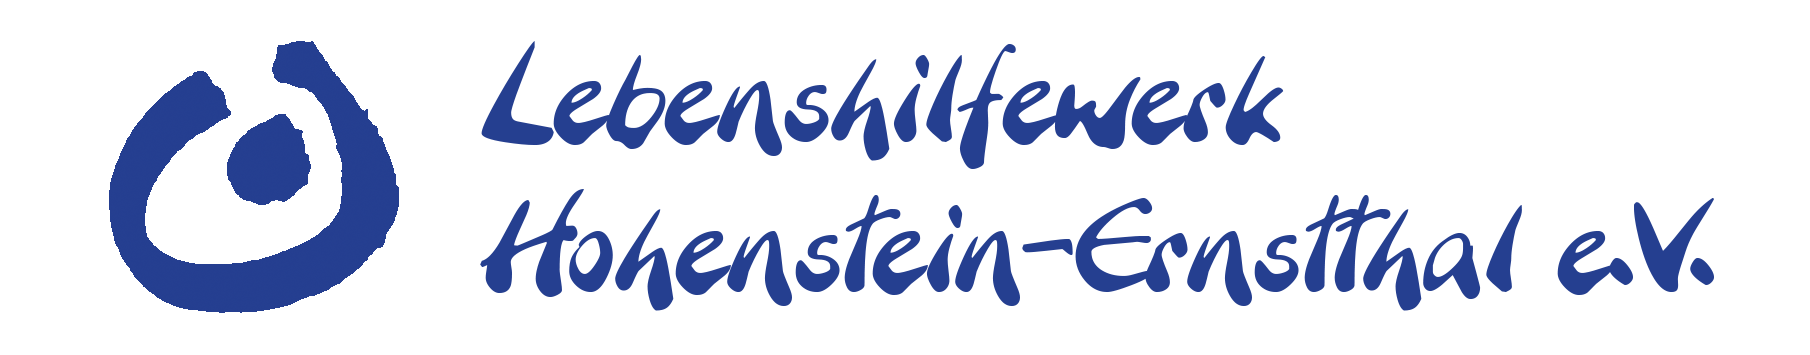 Lebenshilfewerk Hohenstein-Ernstthal e.V.